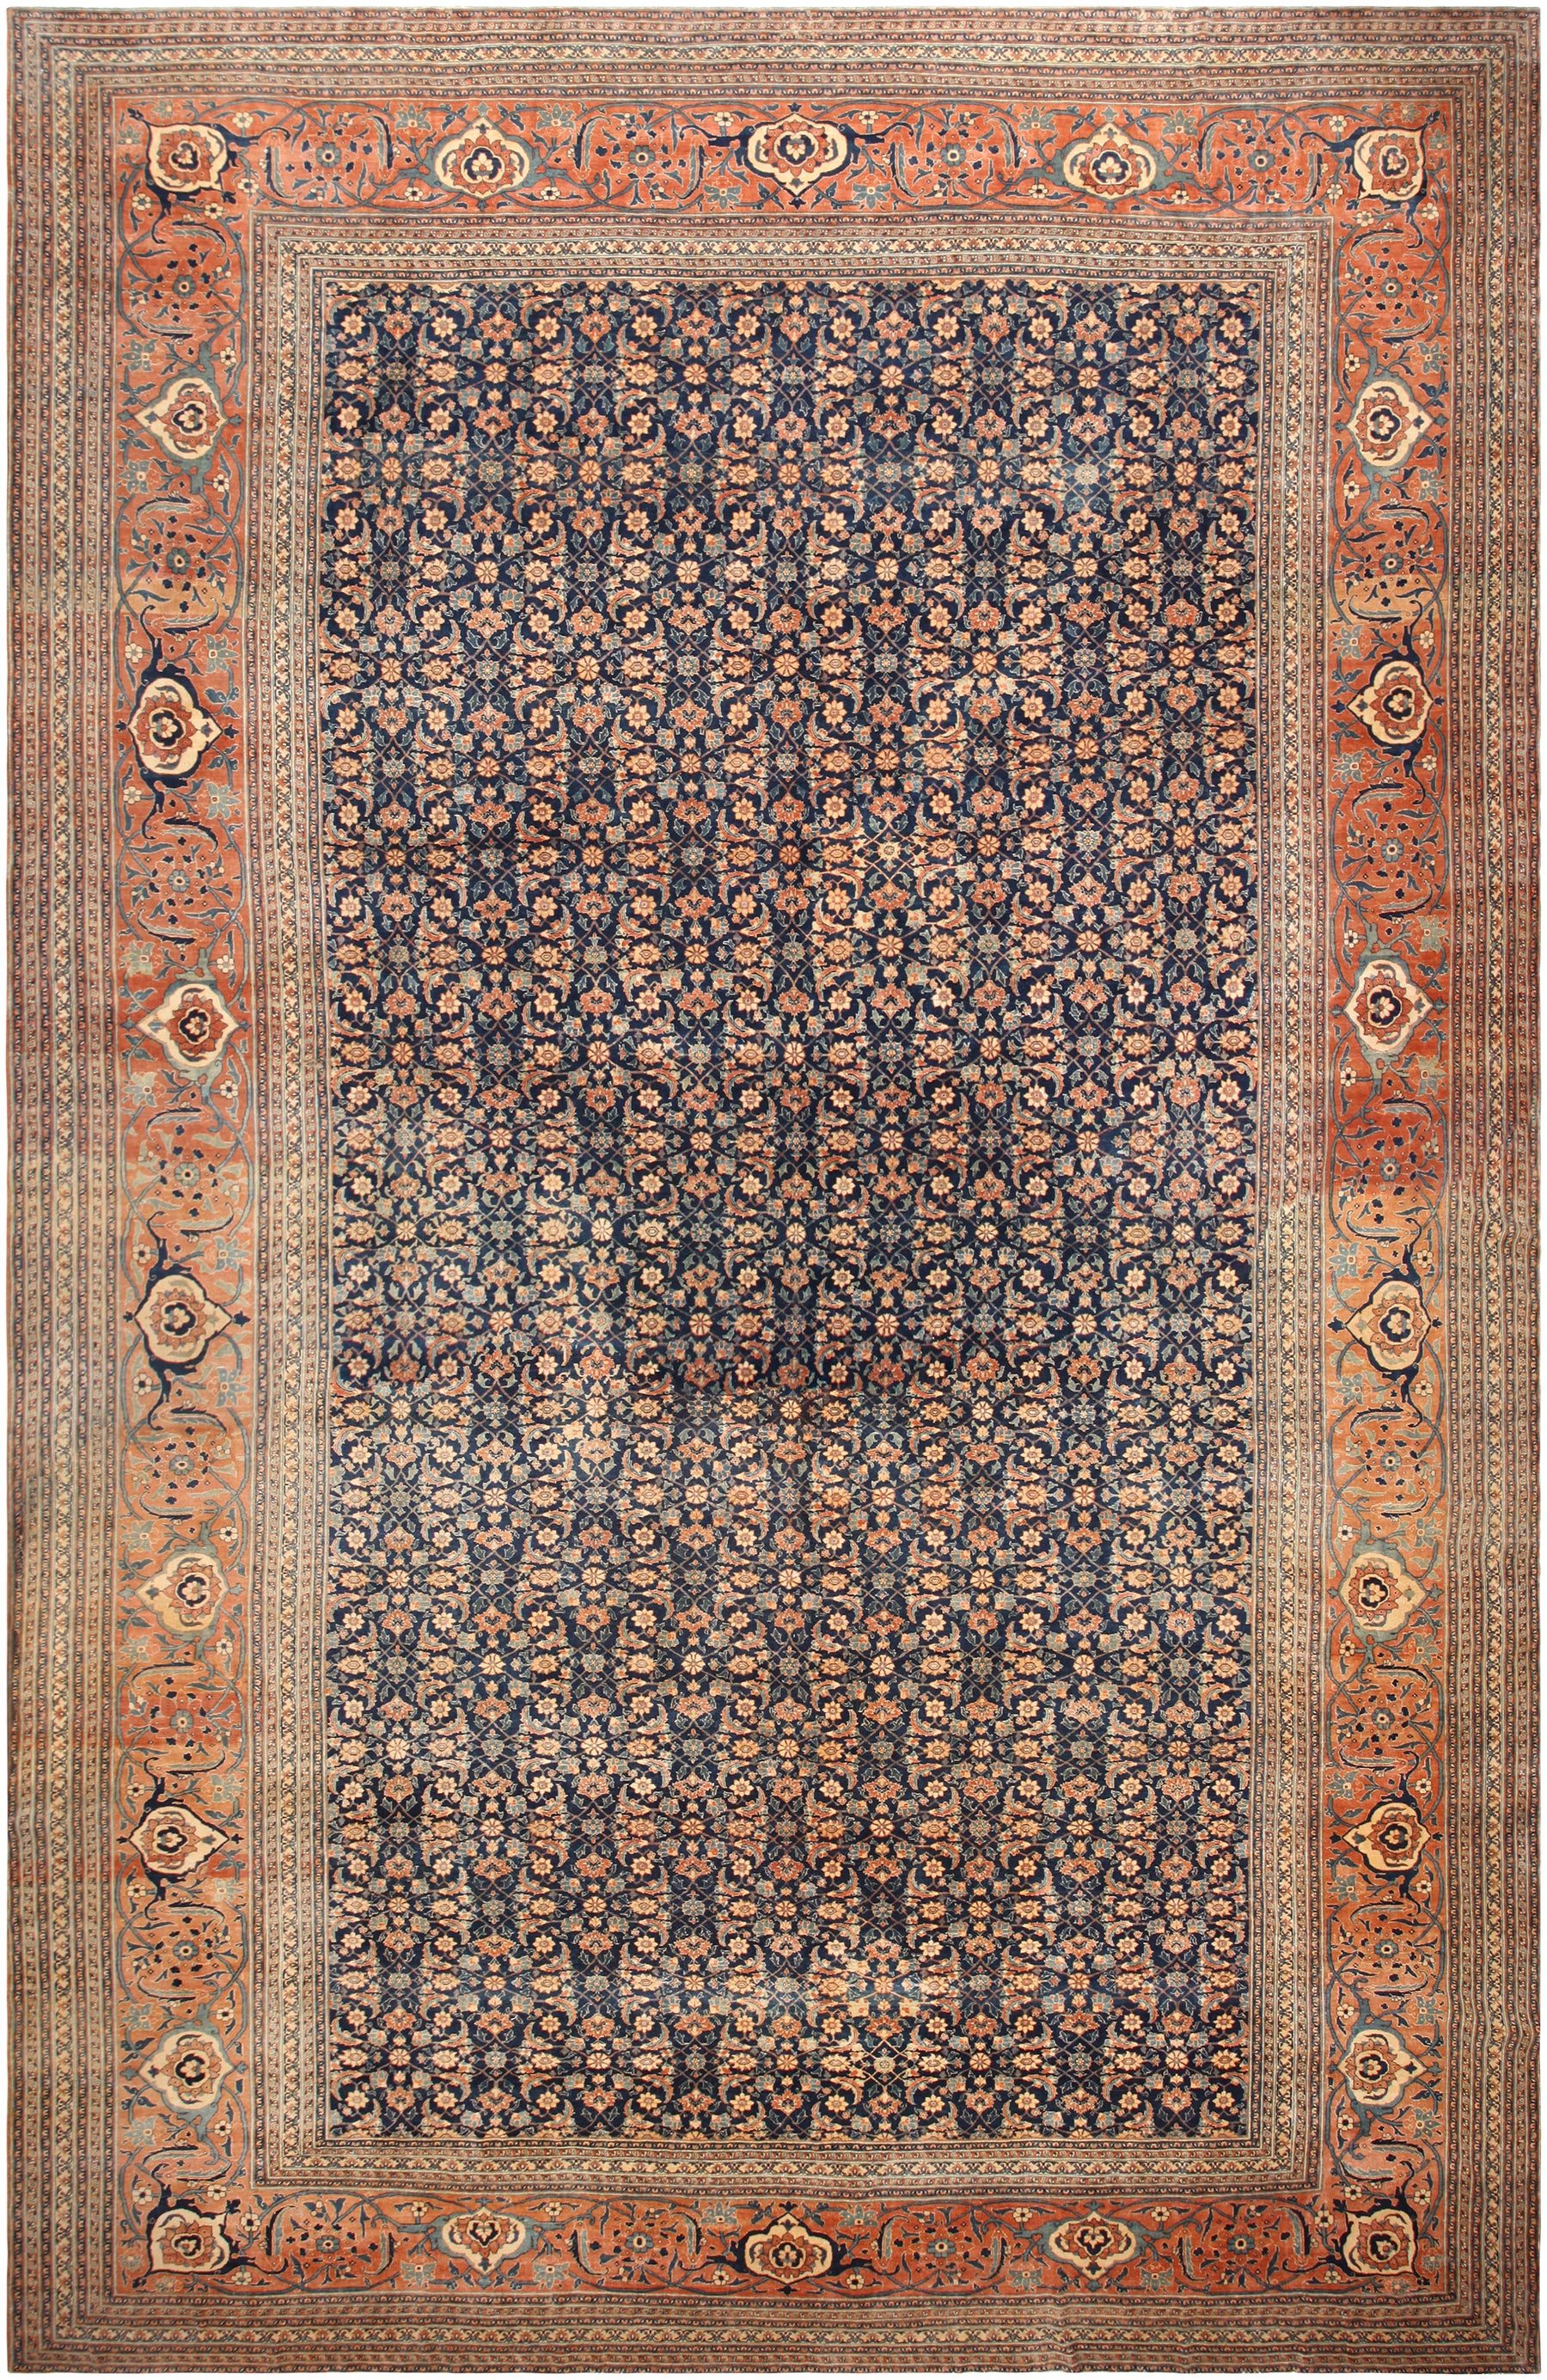 Antique Tabriz Persian Rug